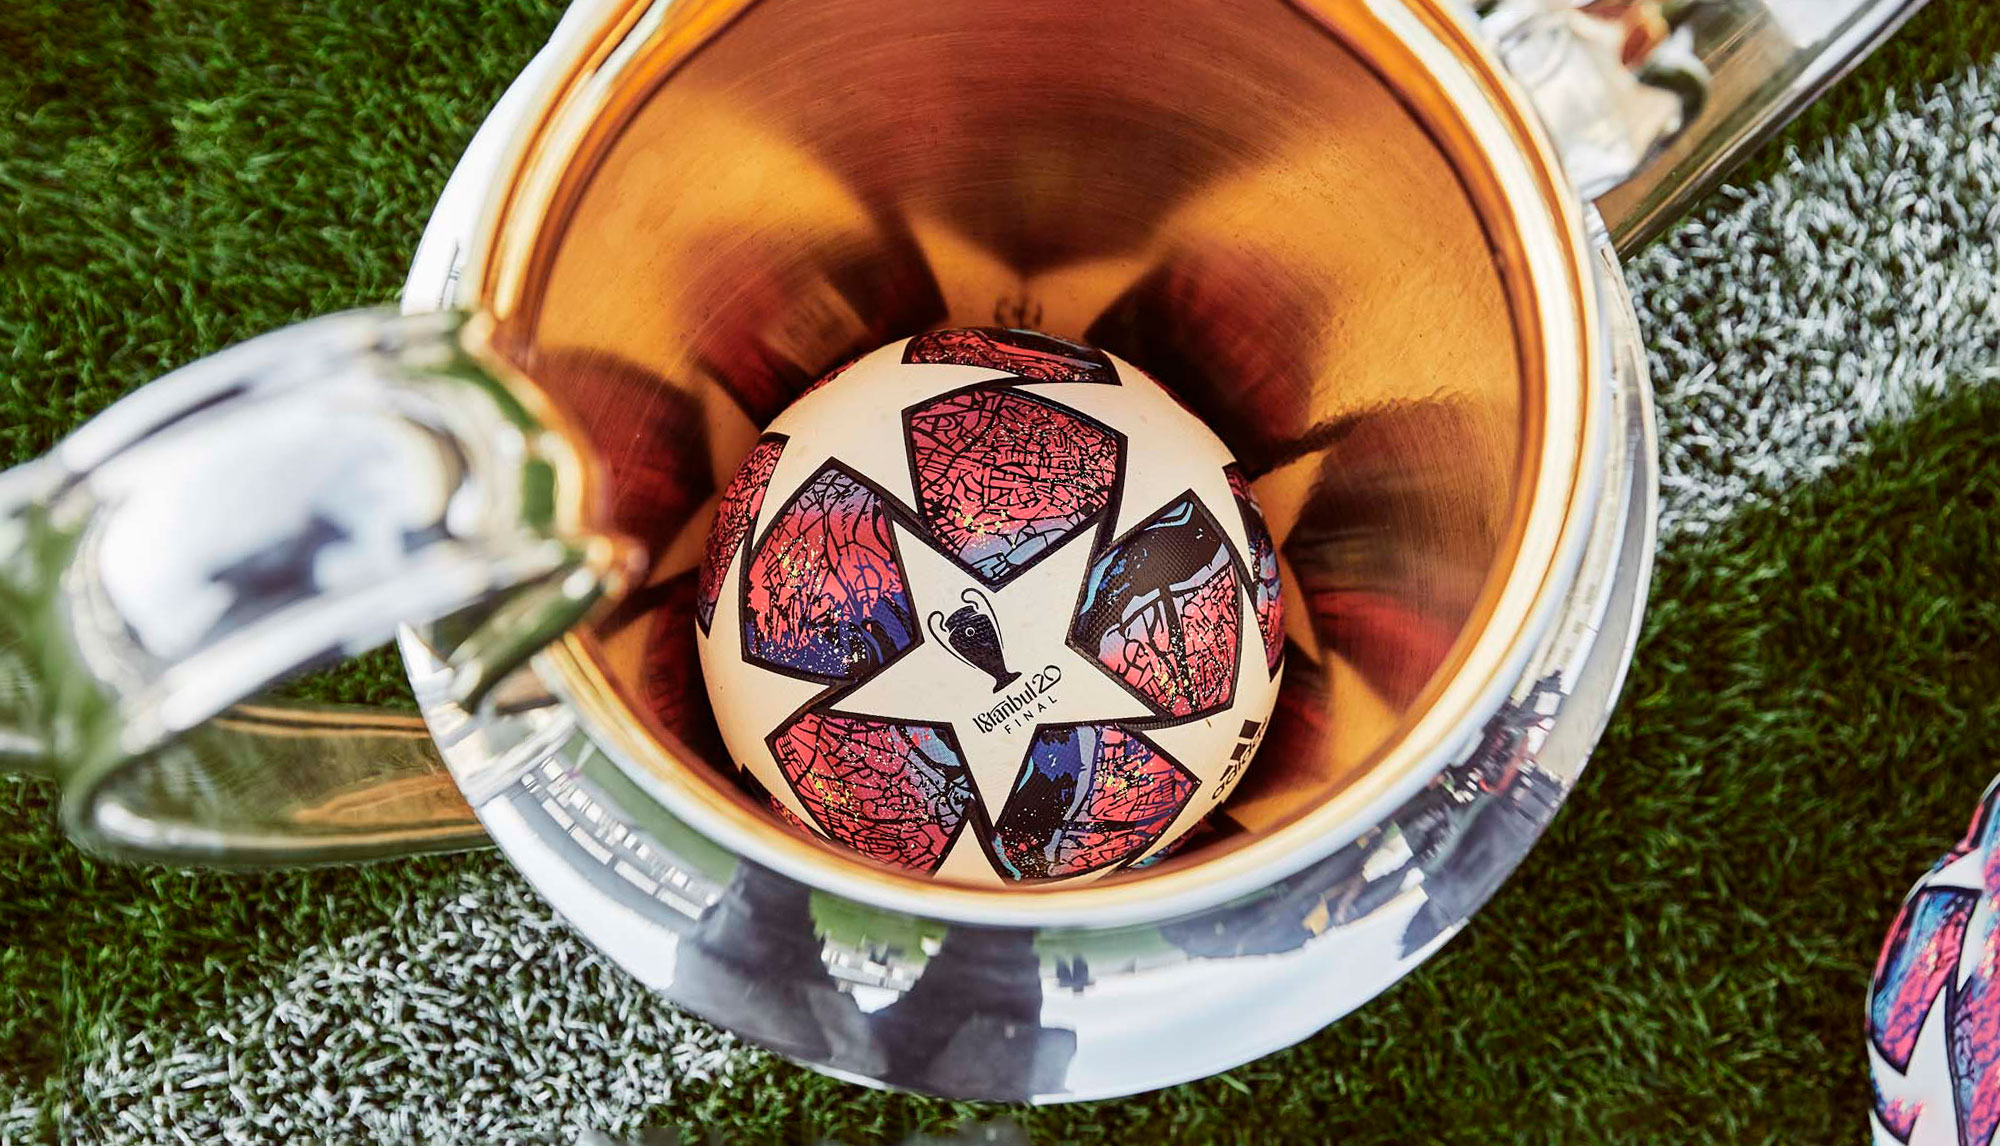 Официальный мяч Лиги Чемпионов 2020 — Adidas FINALE ISTANBUL!